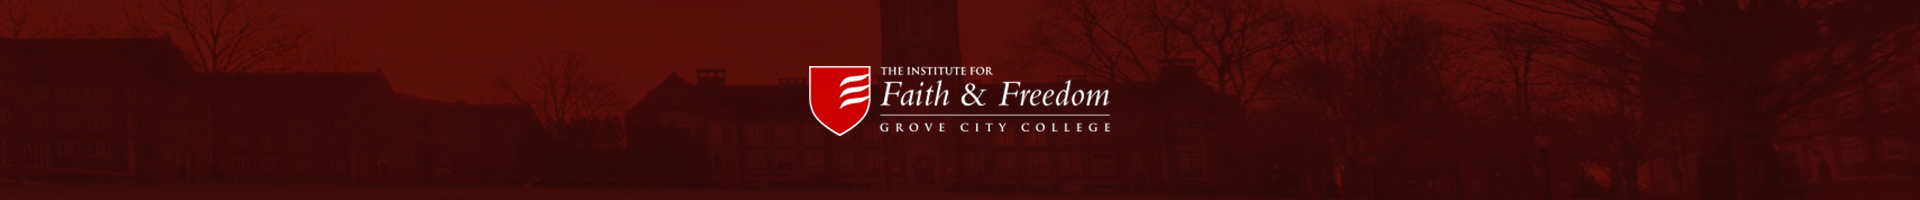 Institute for Faith & Freedom